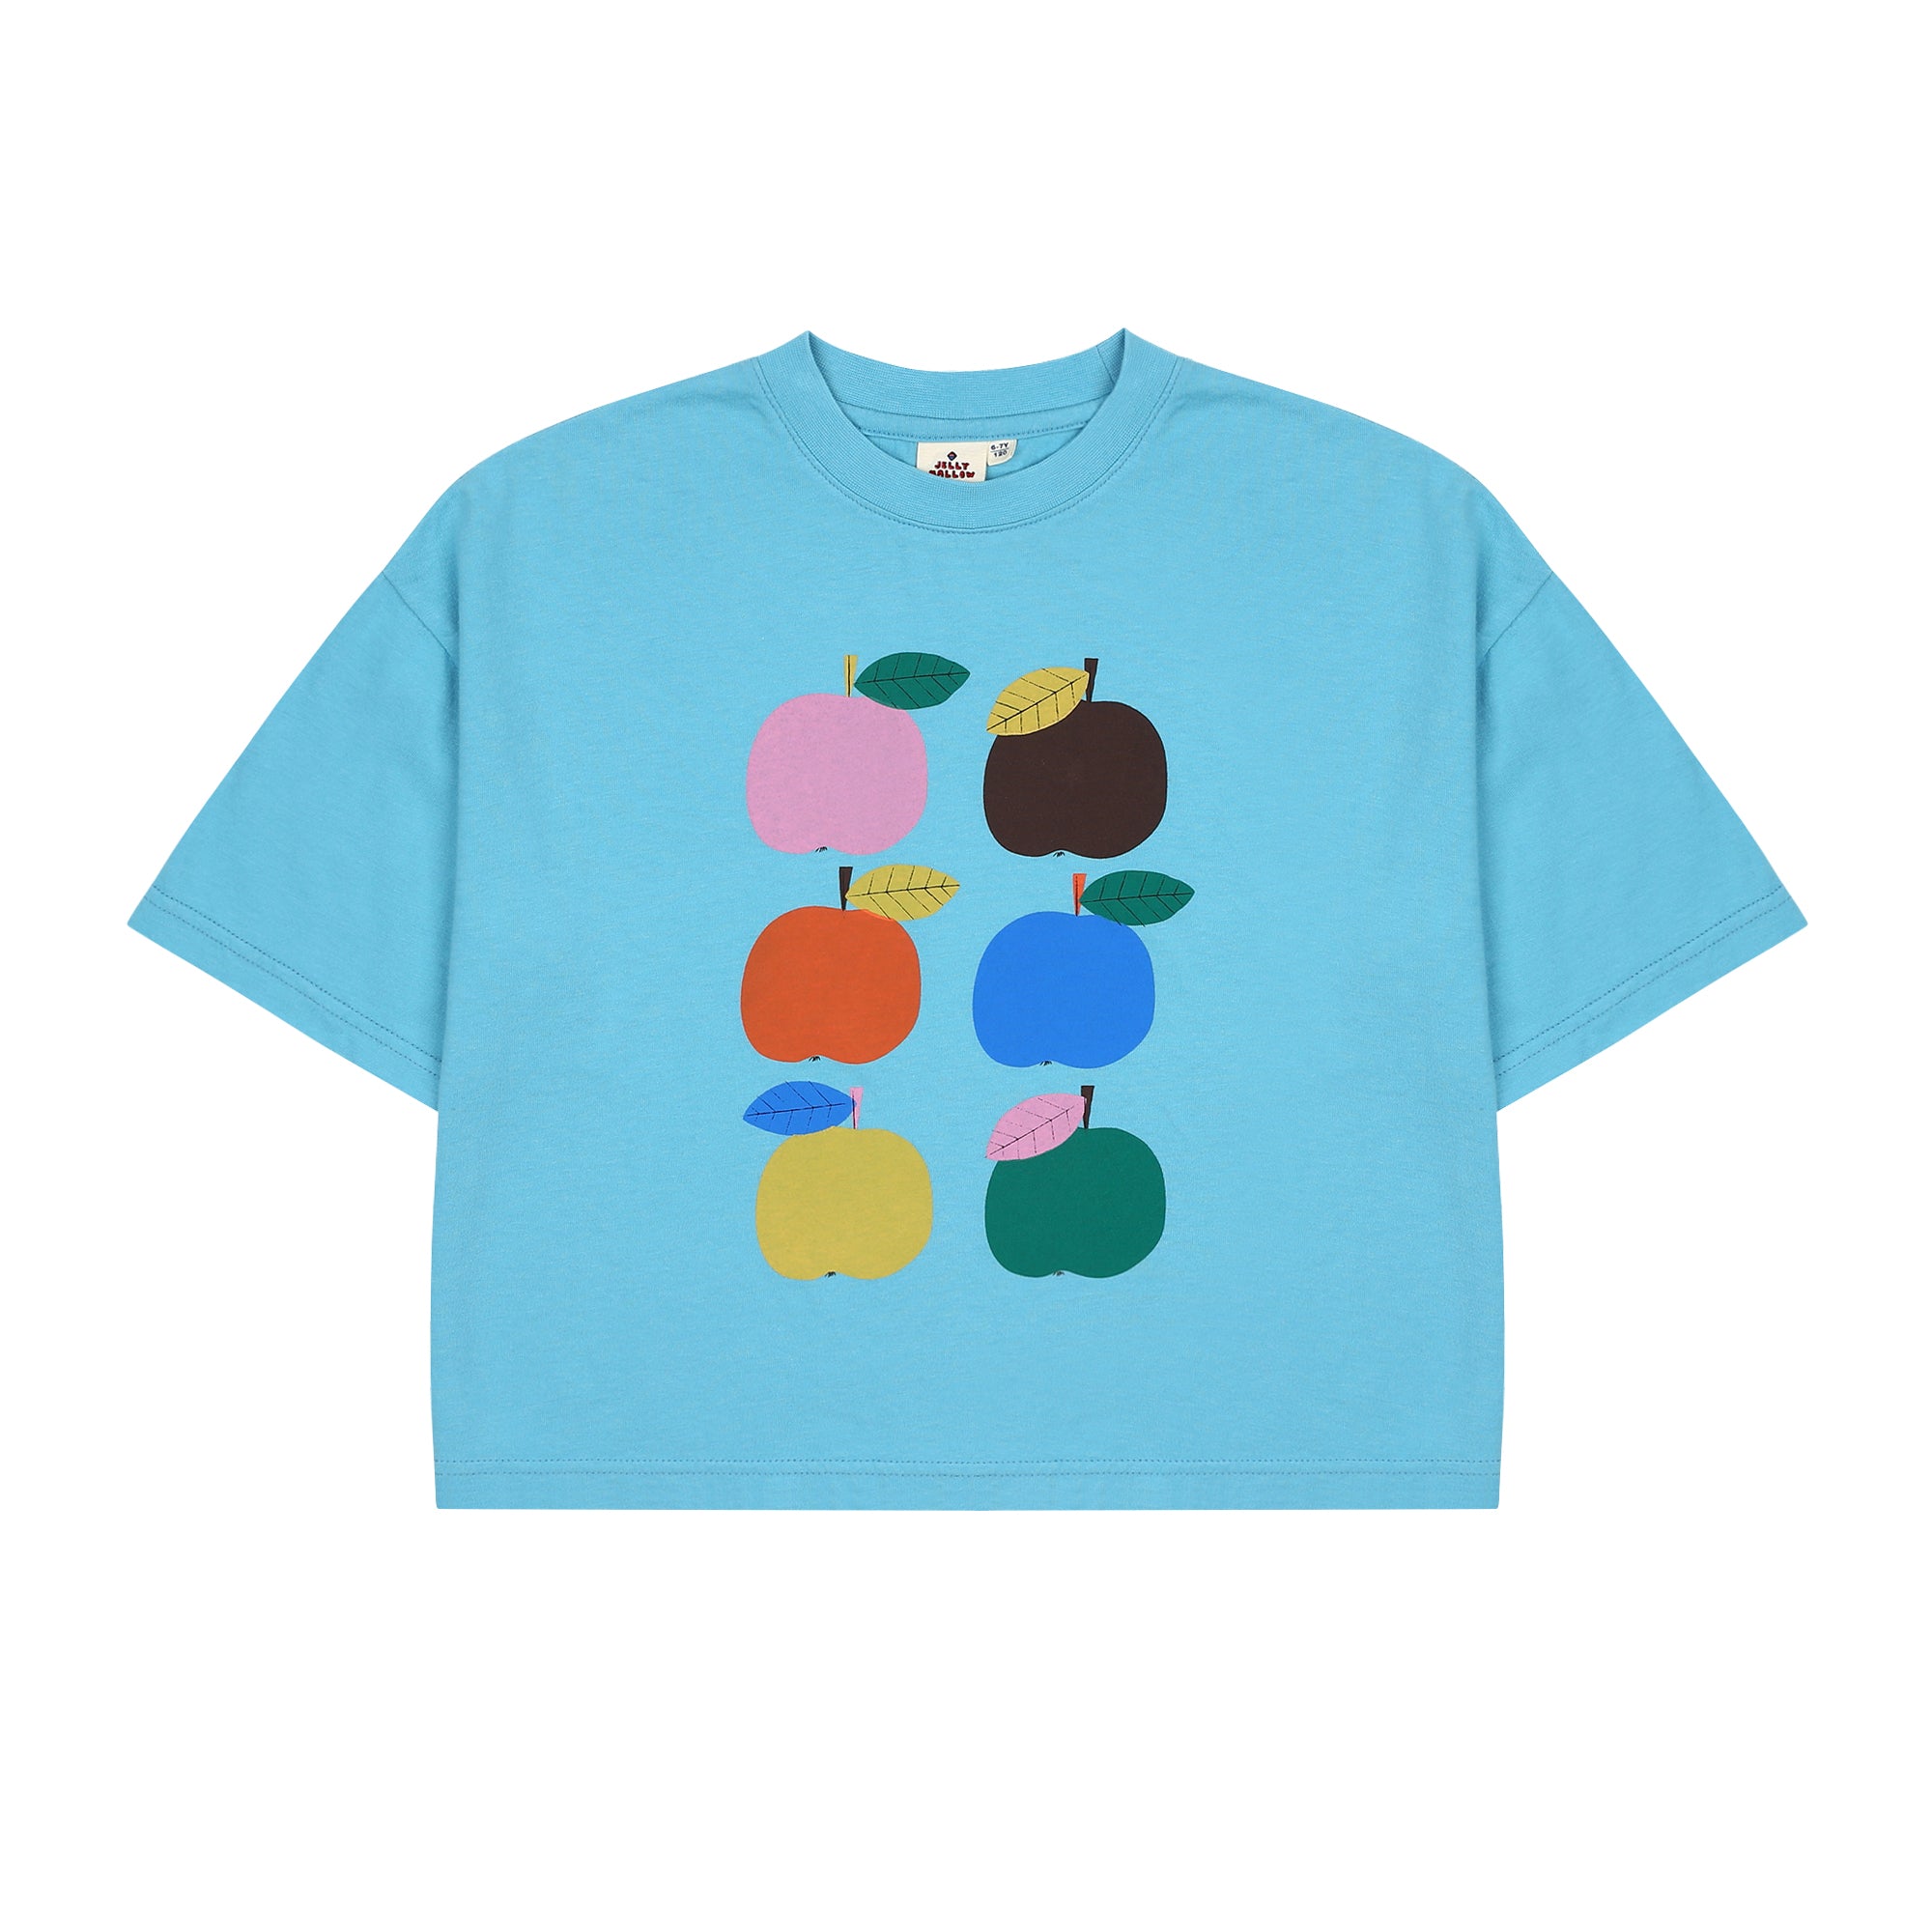 Colorful Apple T-shirt (2 colors)